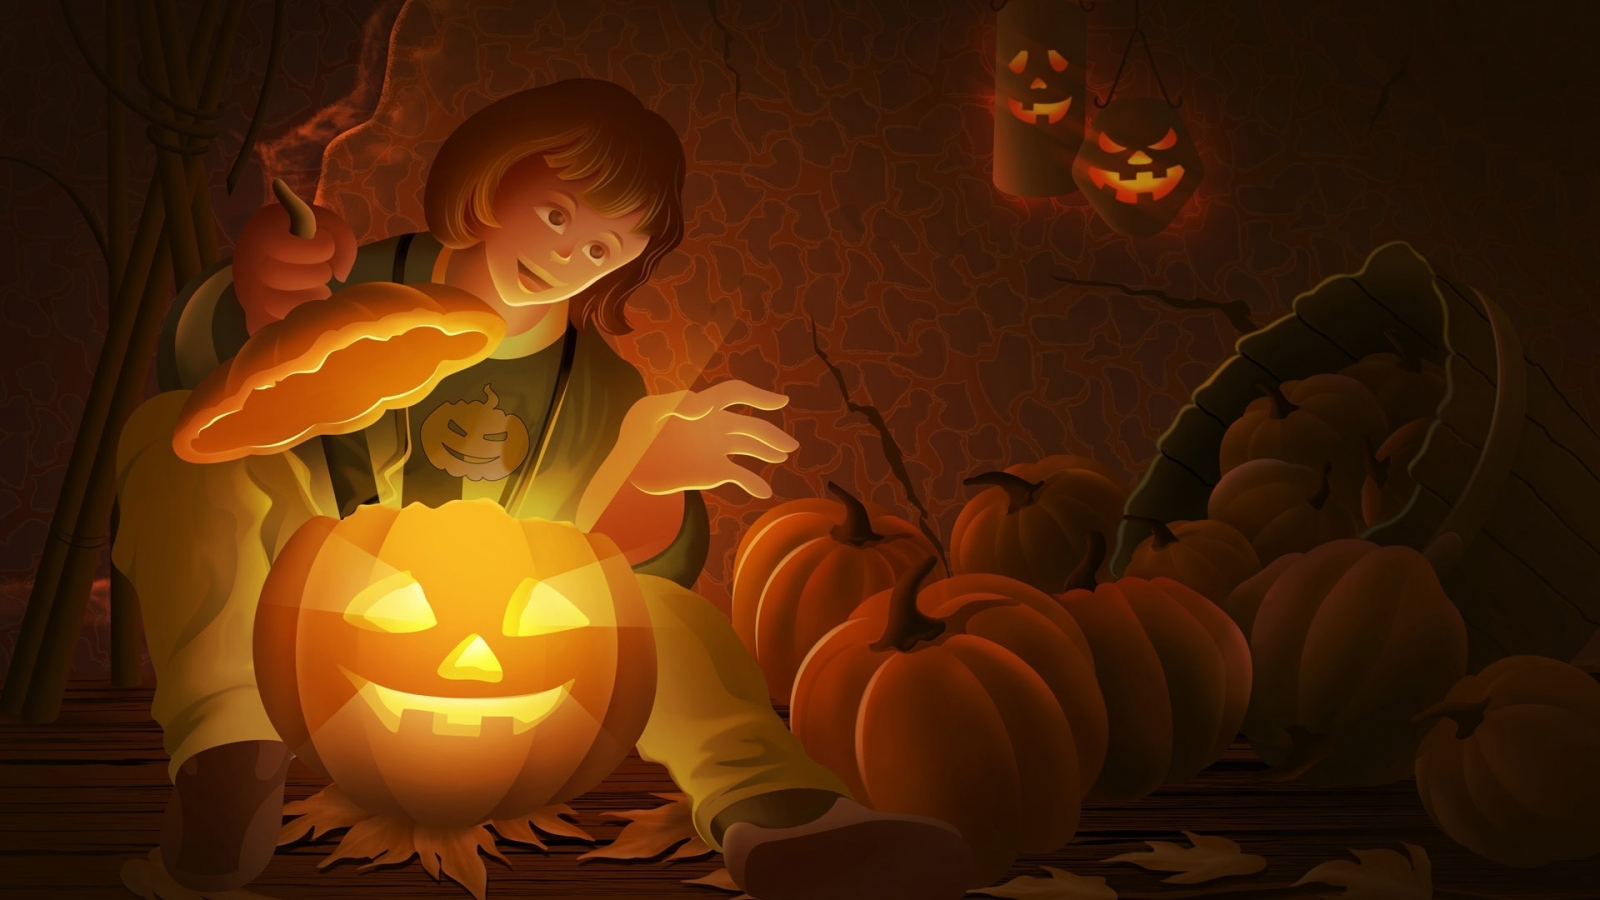 Cool Halloween Pumpkin for 1600 x 900 HDTV resolution